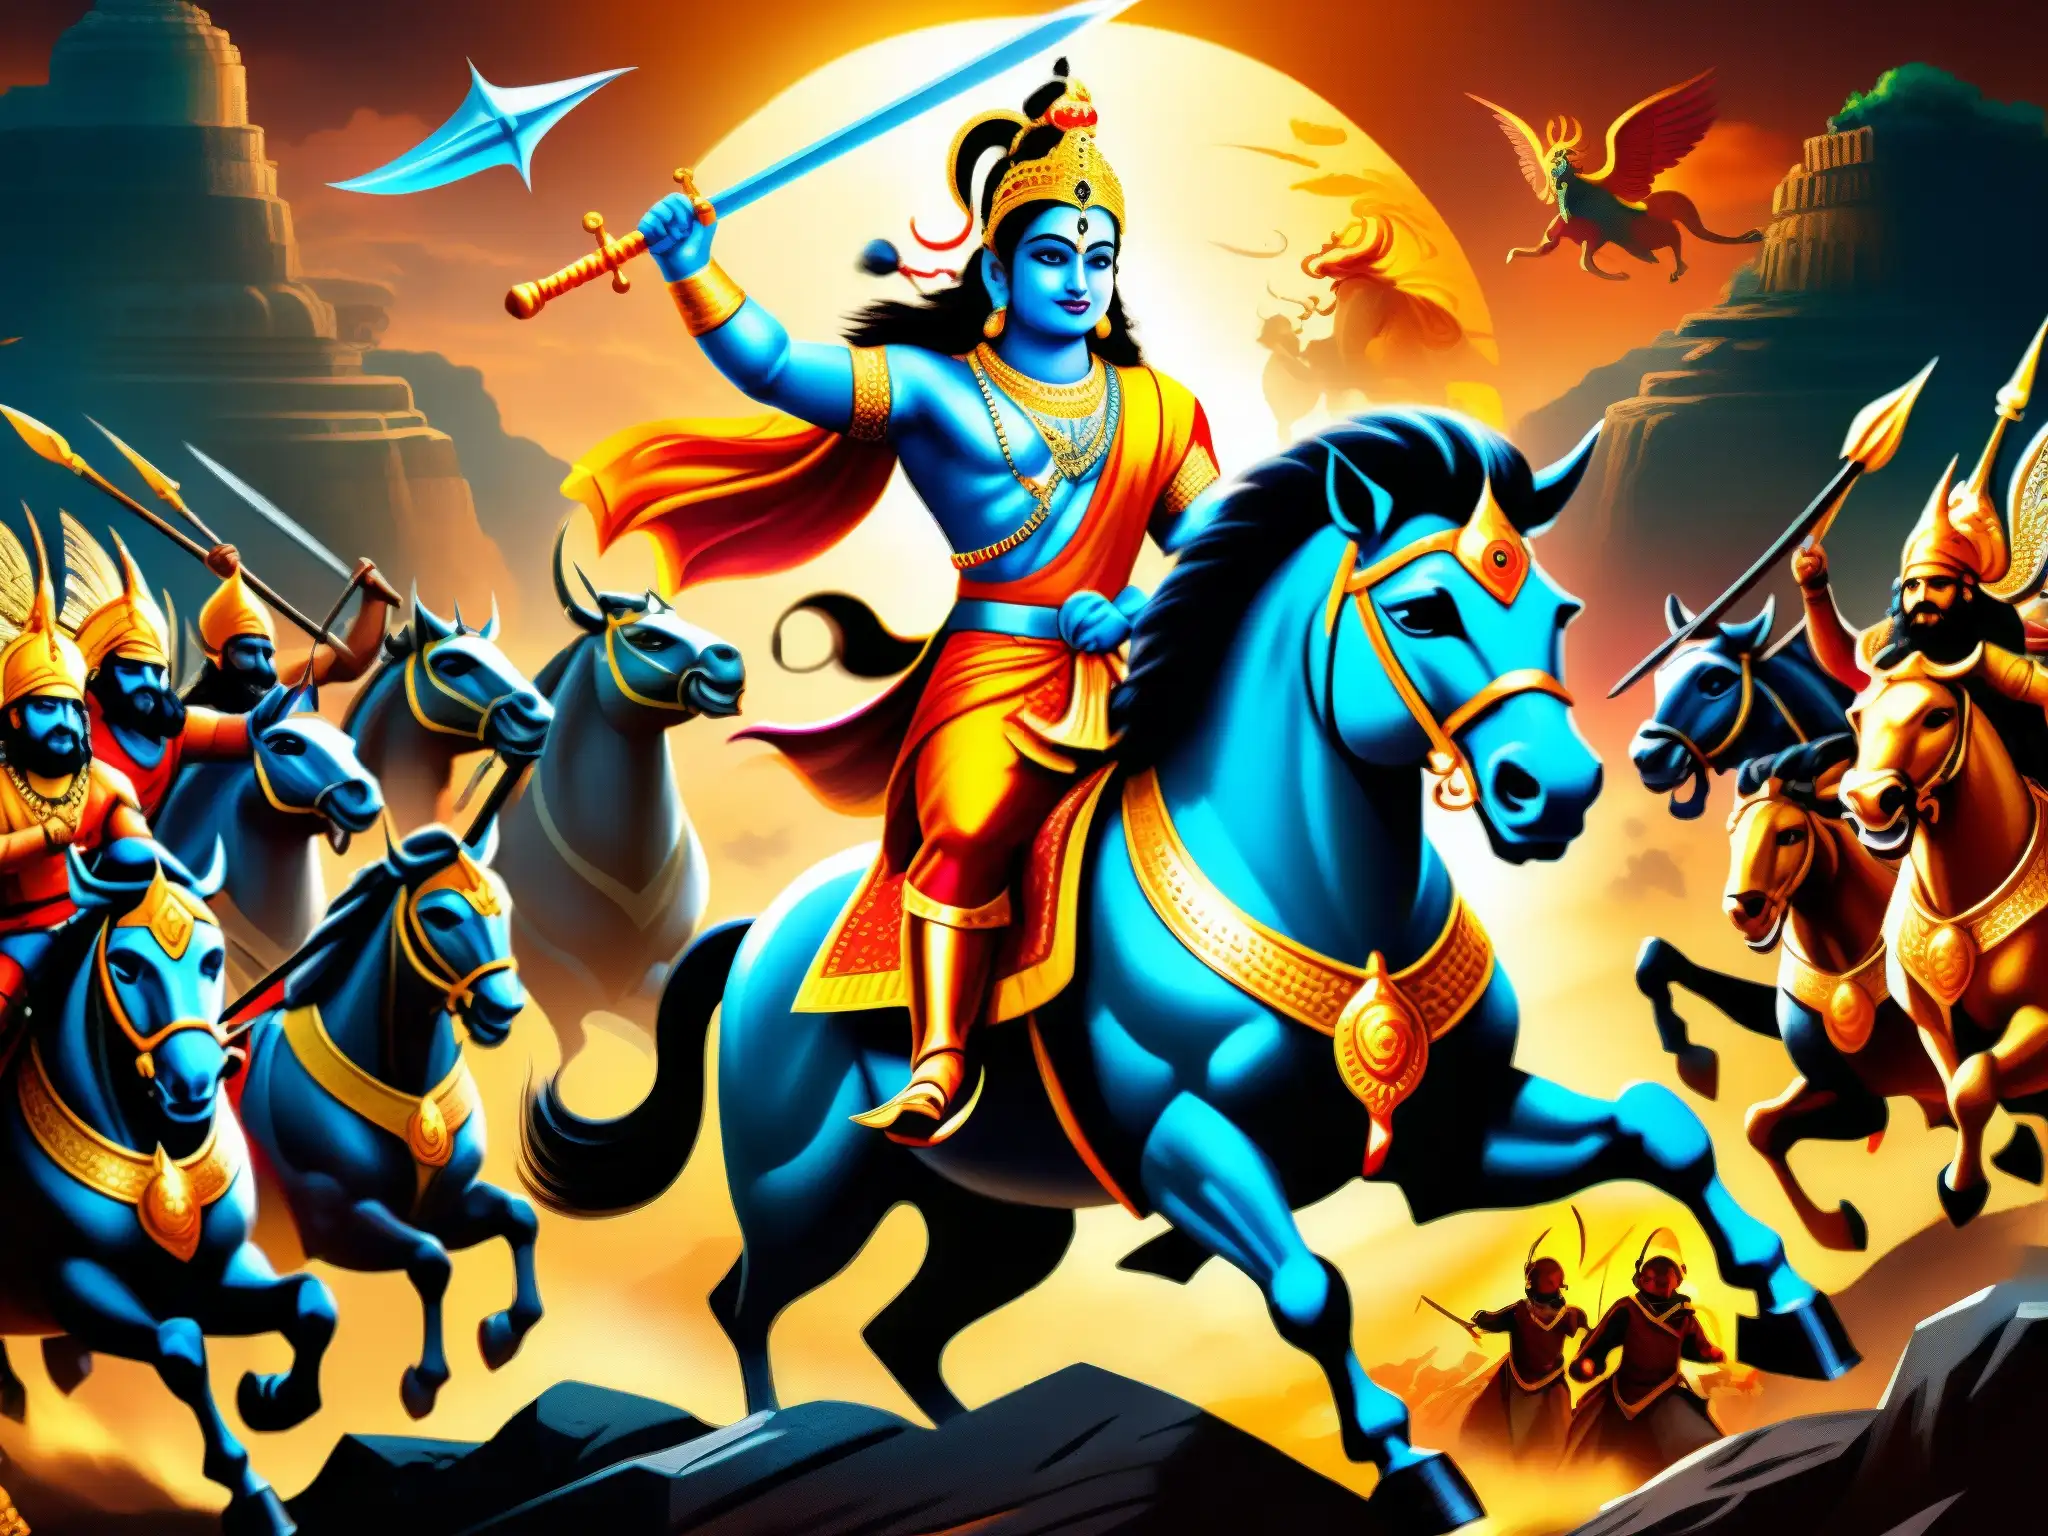 Épica batalla de guerreros místicos en la mitología del sur de Asia